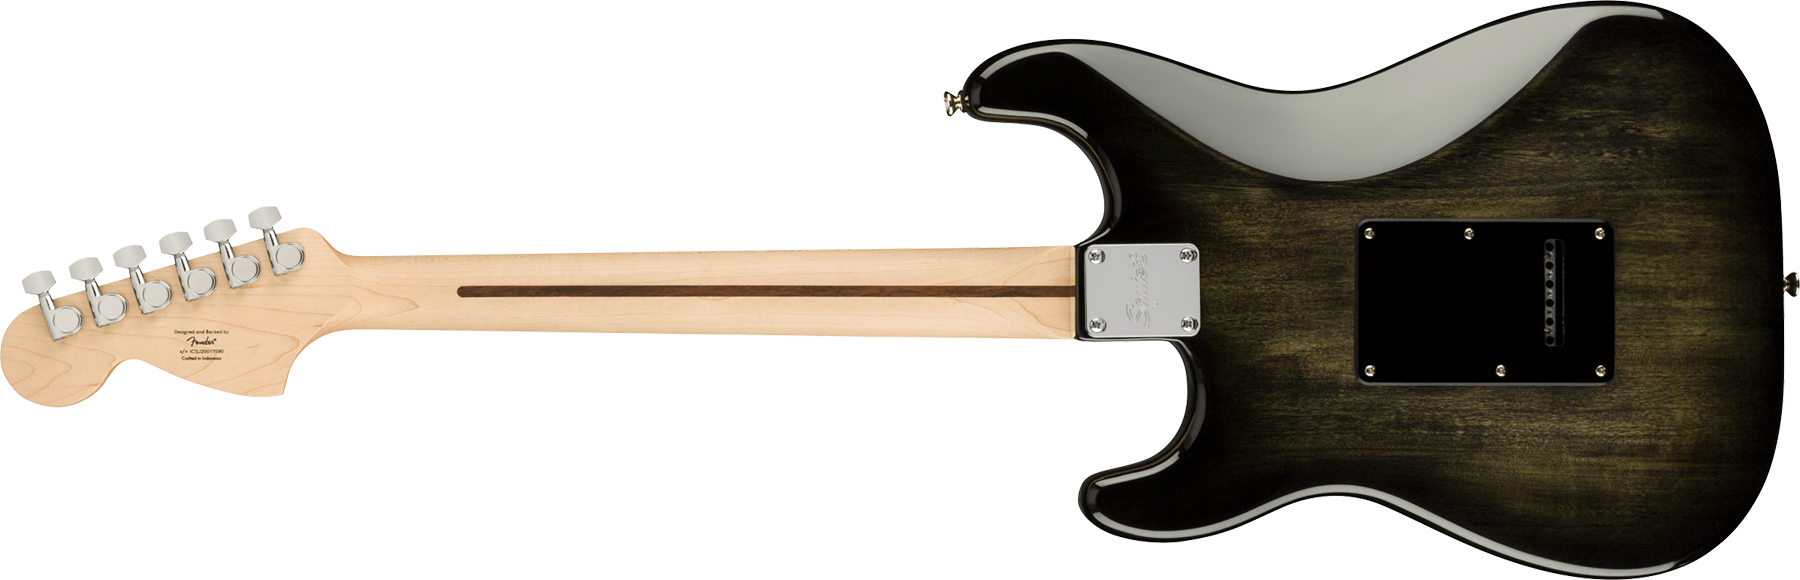 Squier Strat Affinity Fmt Hss 2021 Trem Mn - Black Burst - E-Gitarre in Str-Form - Variation 1